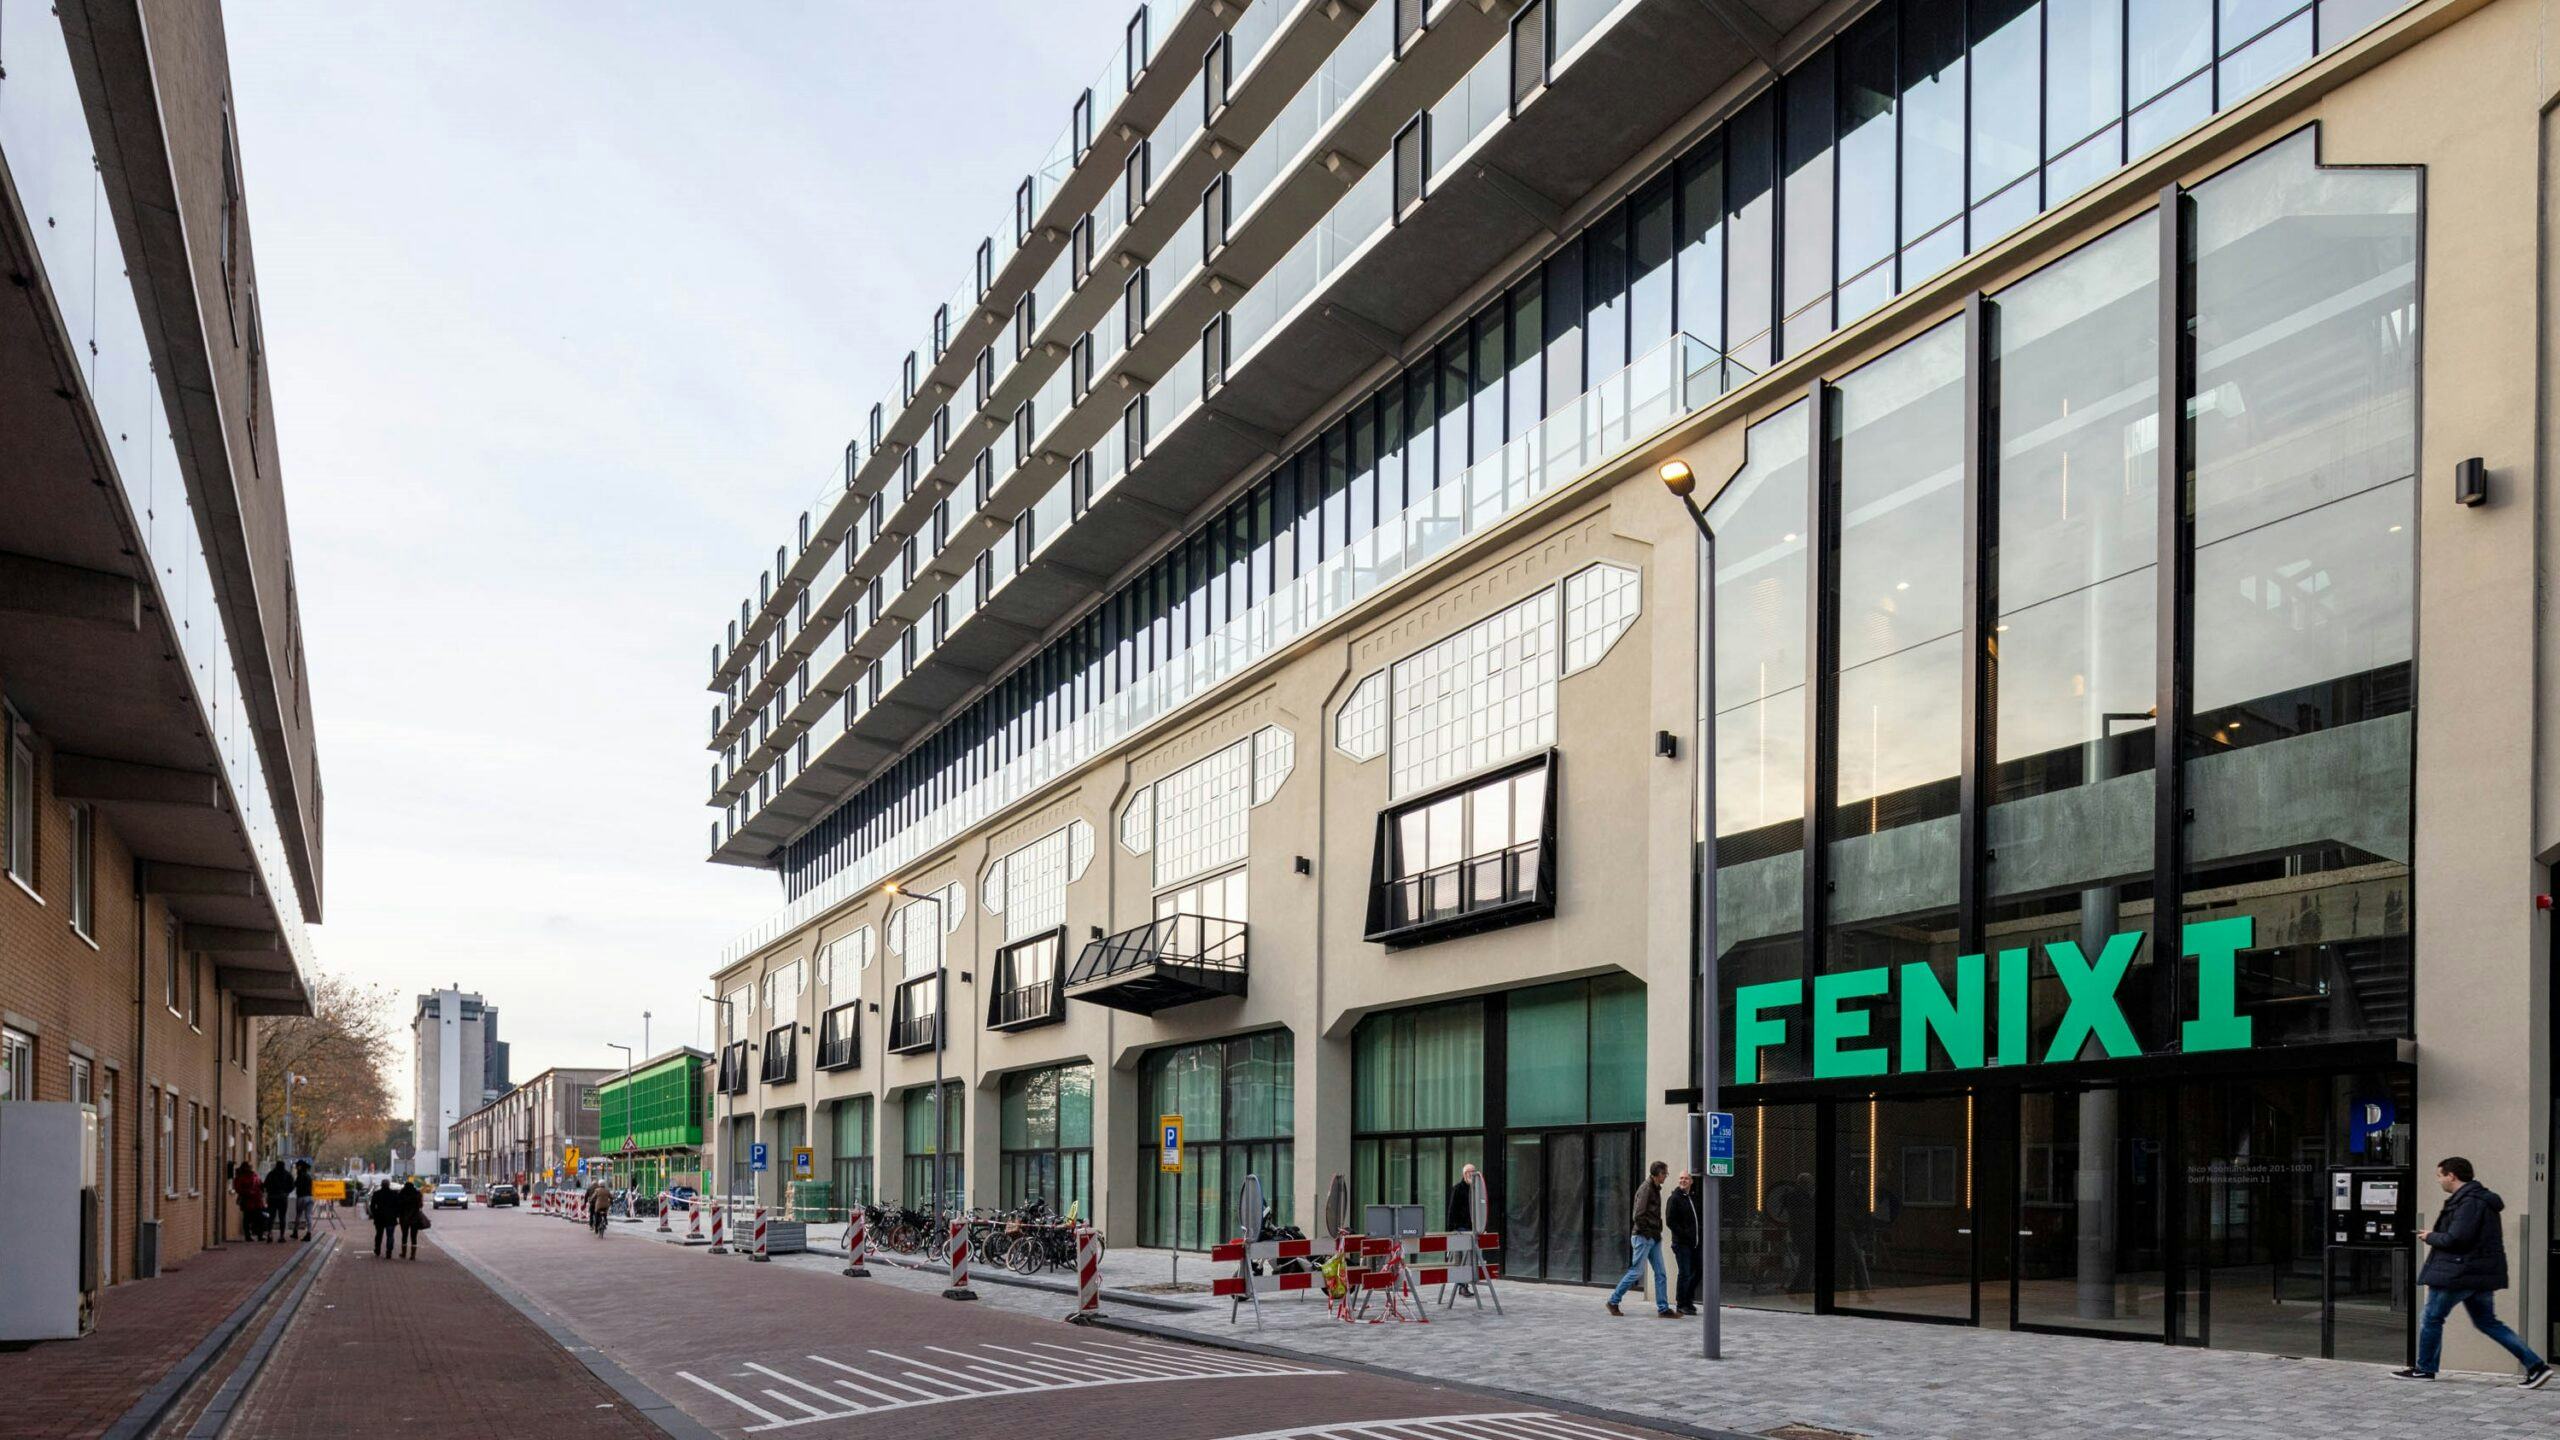 Fenix 1 in Rotterdam.